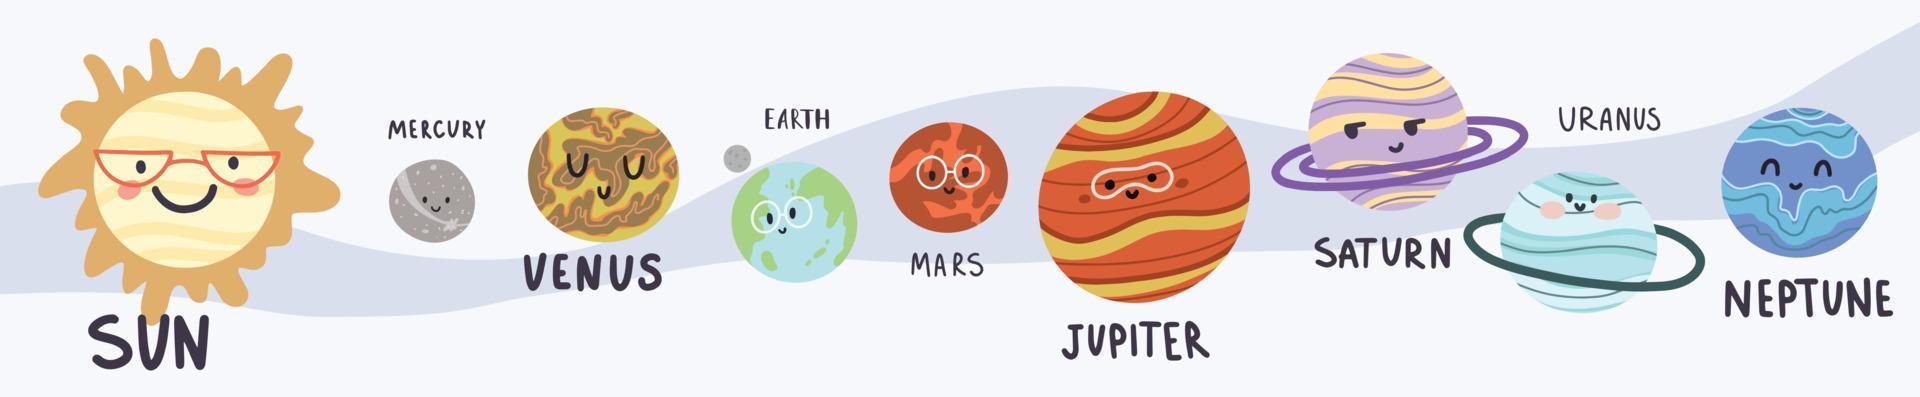 planetas divertidos en el sistema solar con nombres vector